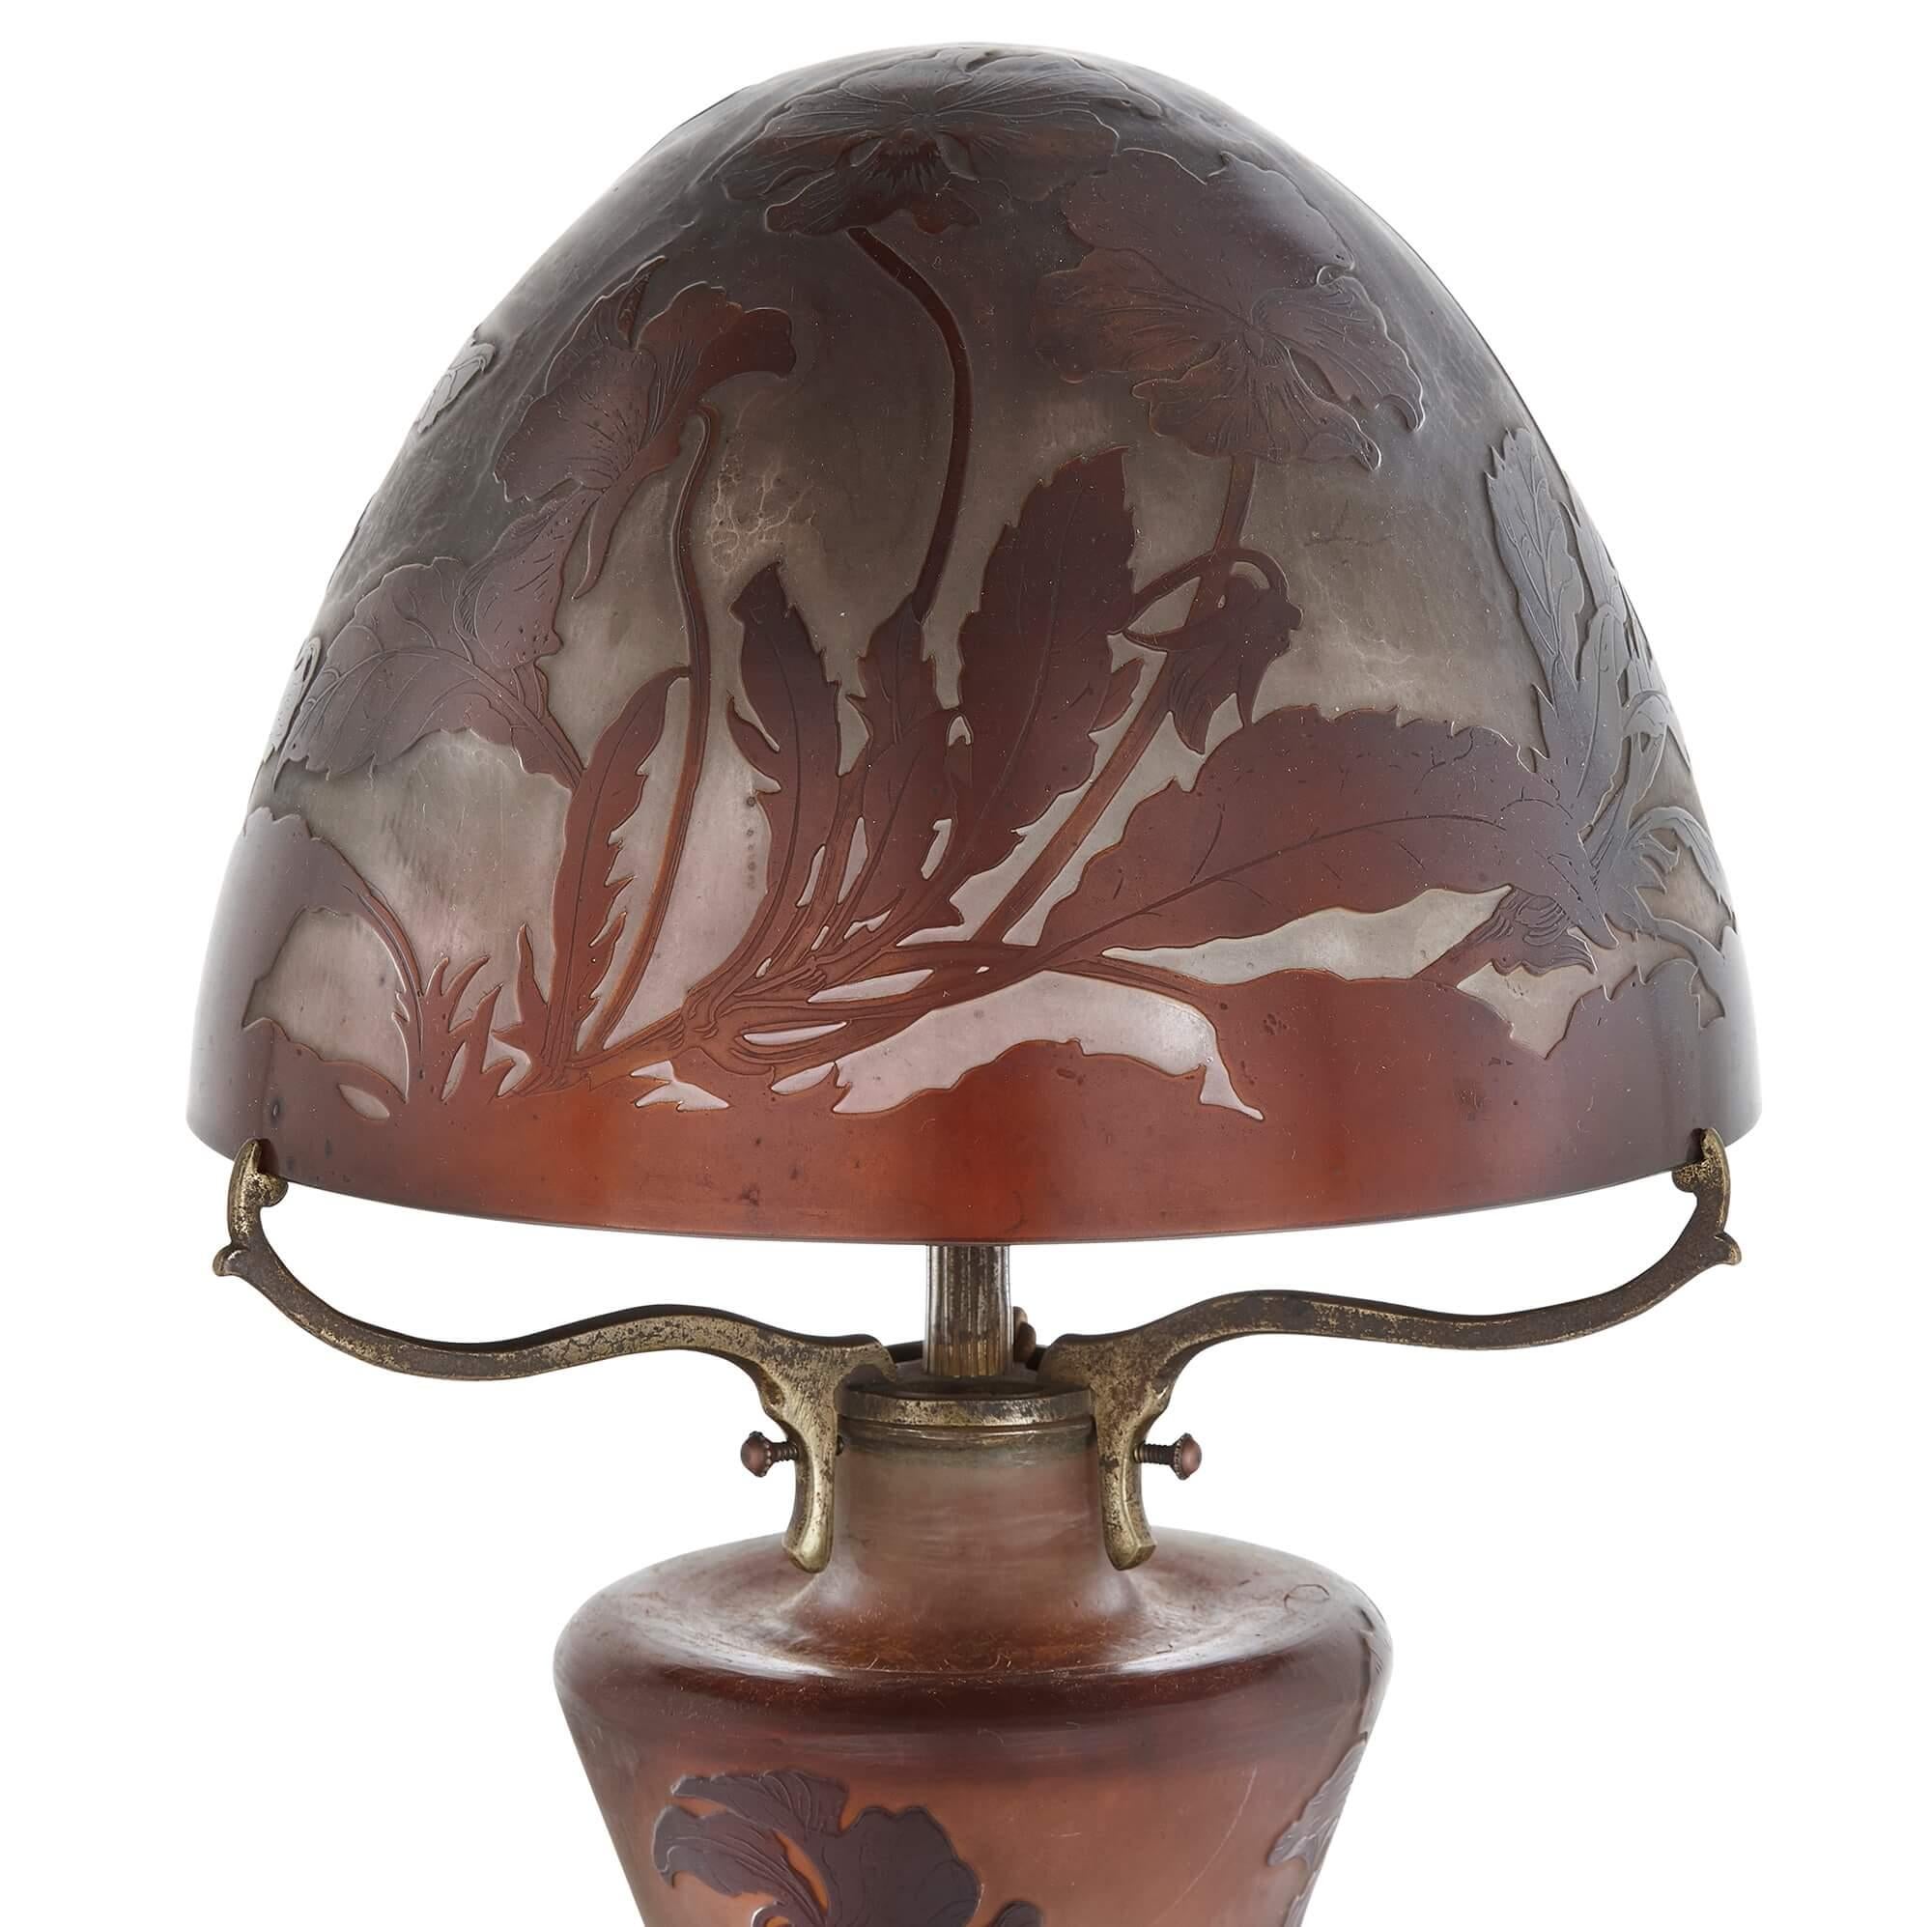 Lampe de table en verre Art Nouveau d'Émile Gallé
Français, c.C. 1900
Hauteur 58 cm, diamètre 22 cm

Cette étonnante lampe Art nouveau est l'œuvre de l'un des principaux praticiens de ce style : Émile Gallé. La lampe présente une tige élancée et